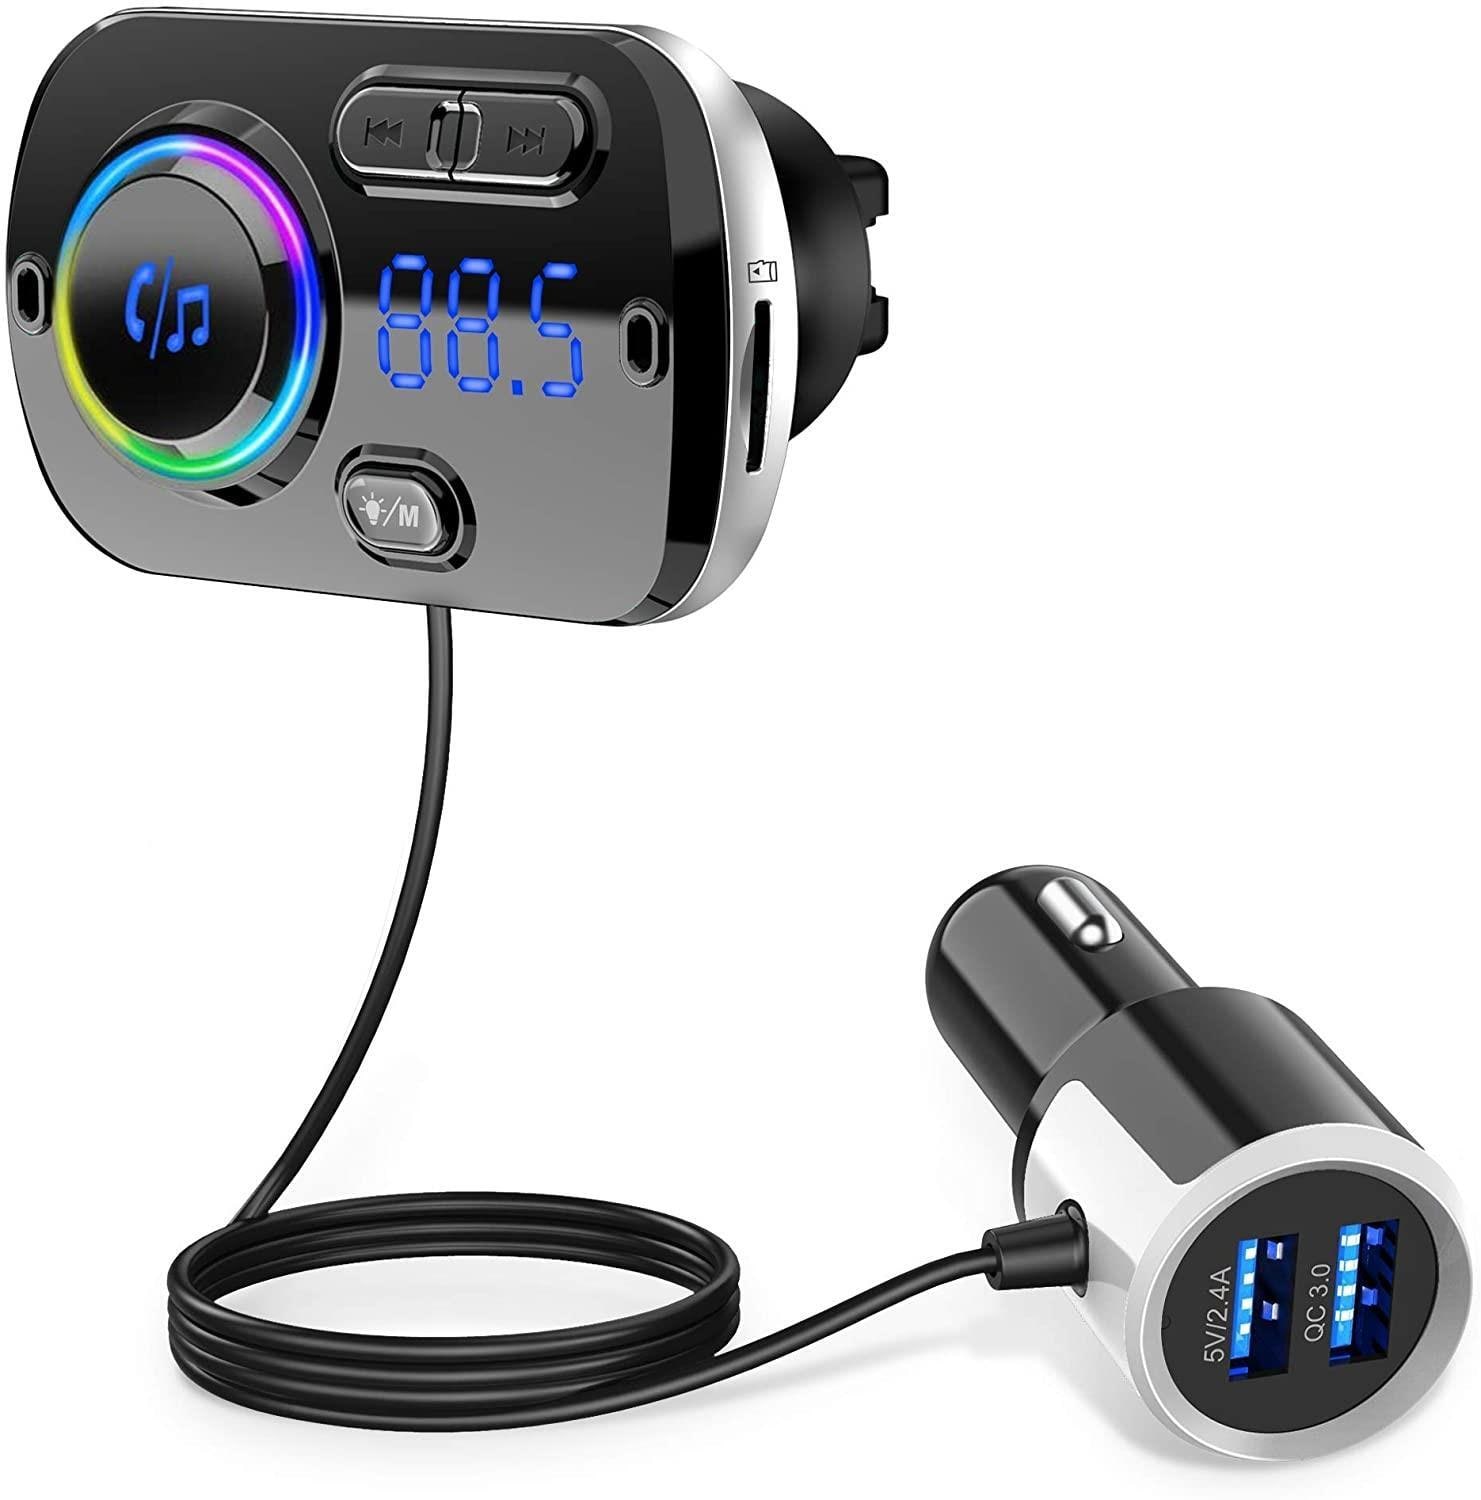 Trådlös FM-sändare för bilen Bluetooth 5.0 QC3